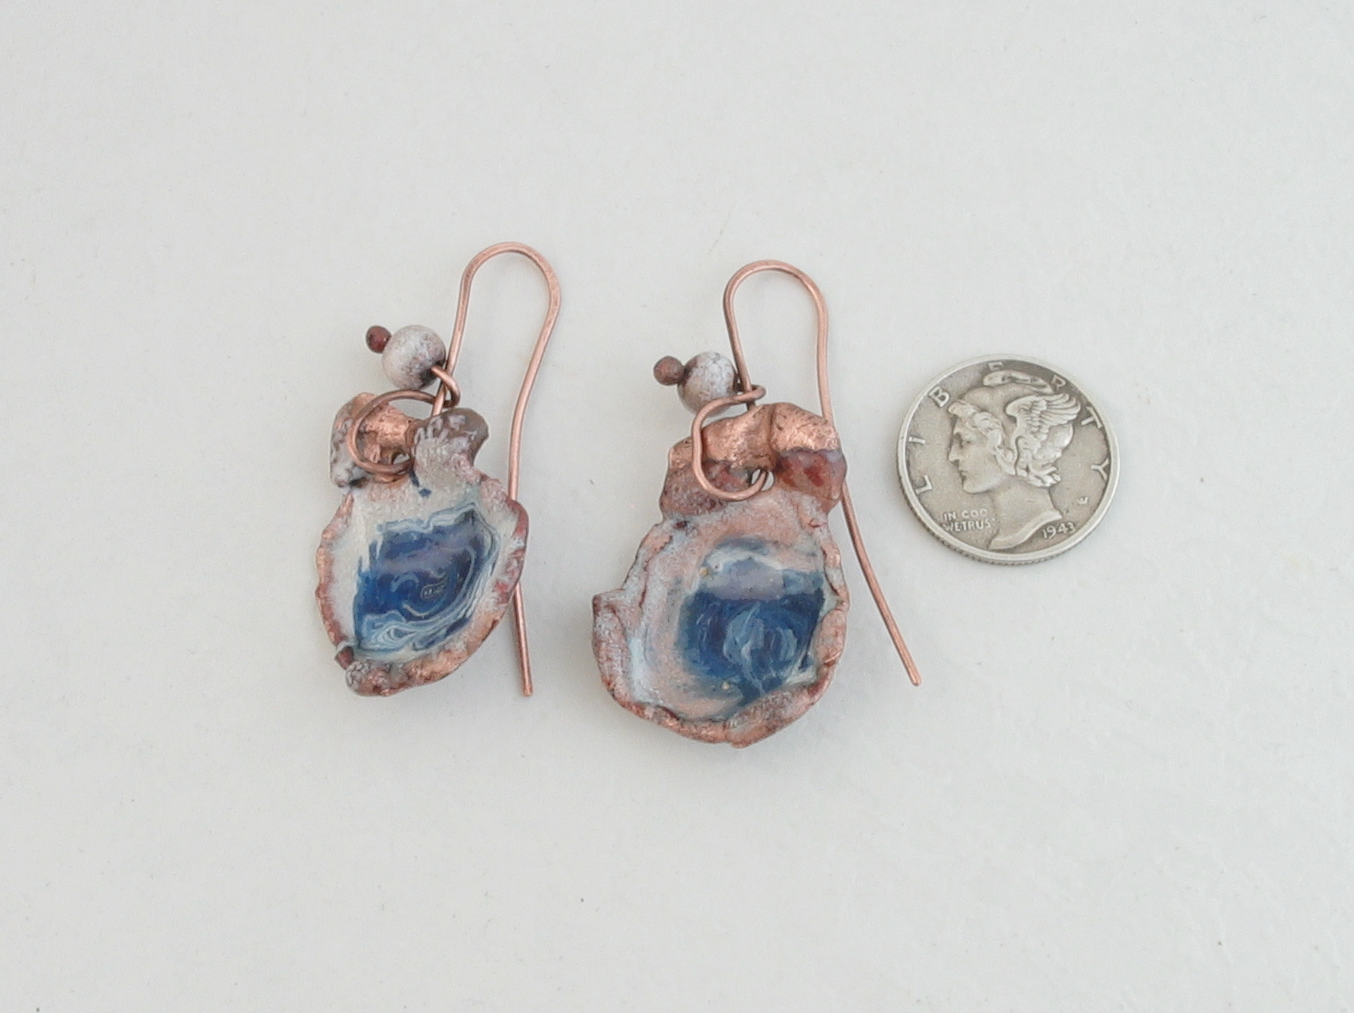 Handmade Royal Blue and White Enamel on Melted Copper Dangle Earrings